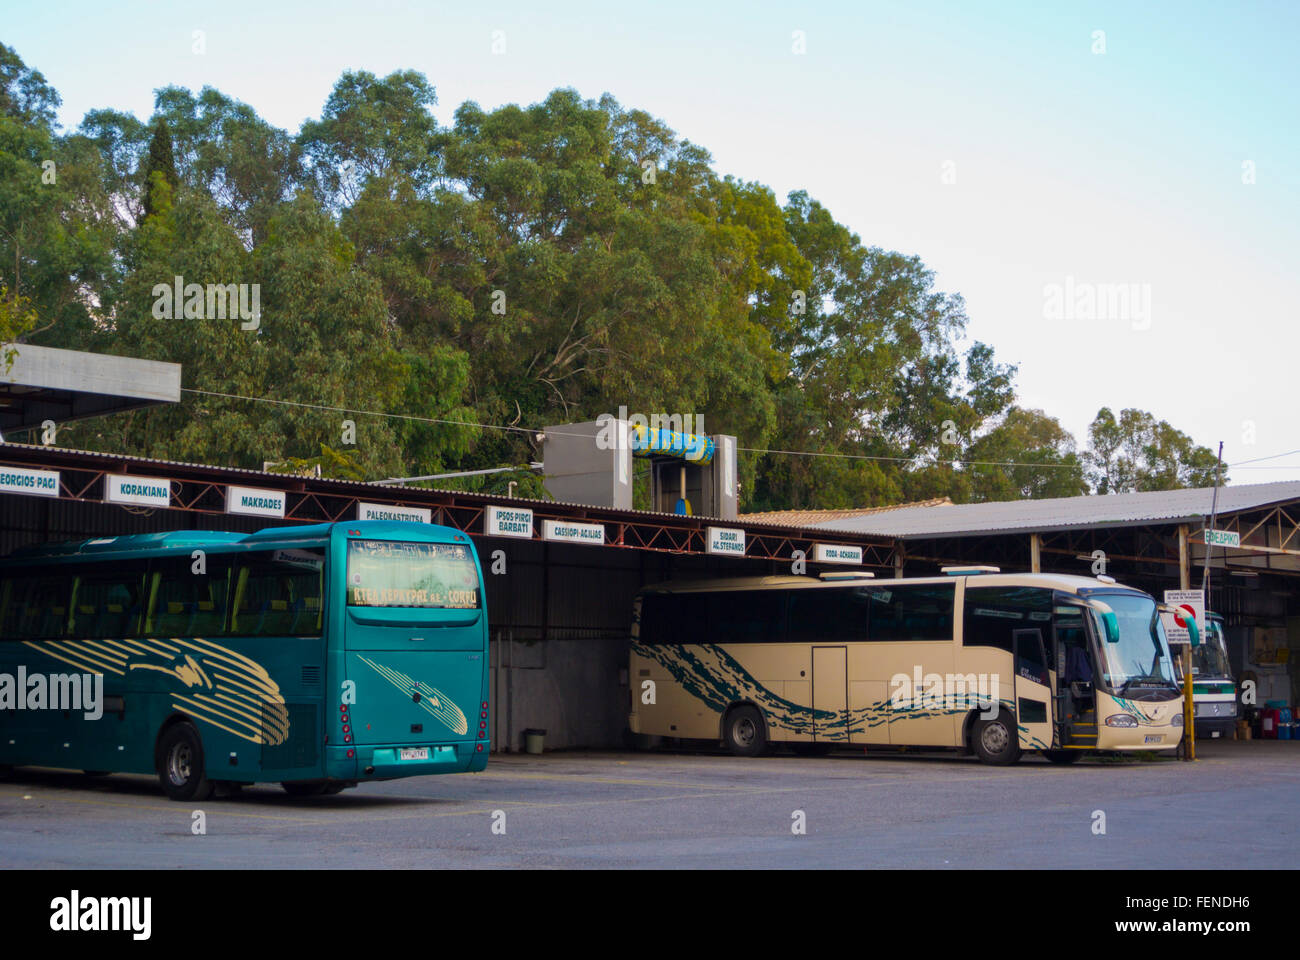 Estación de autobuses verdes, estación de autobuses KTEL, antigua estación de autobuses, la ciudad de Corfú, la isla de Corfú, las islas Jónicas, Grecia Foto de stock